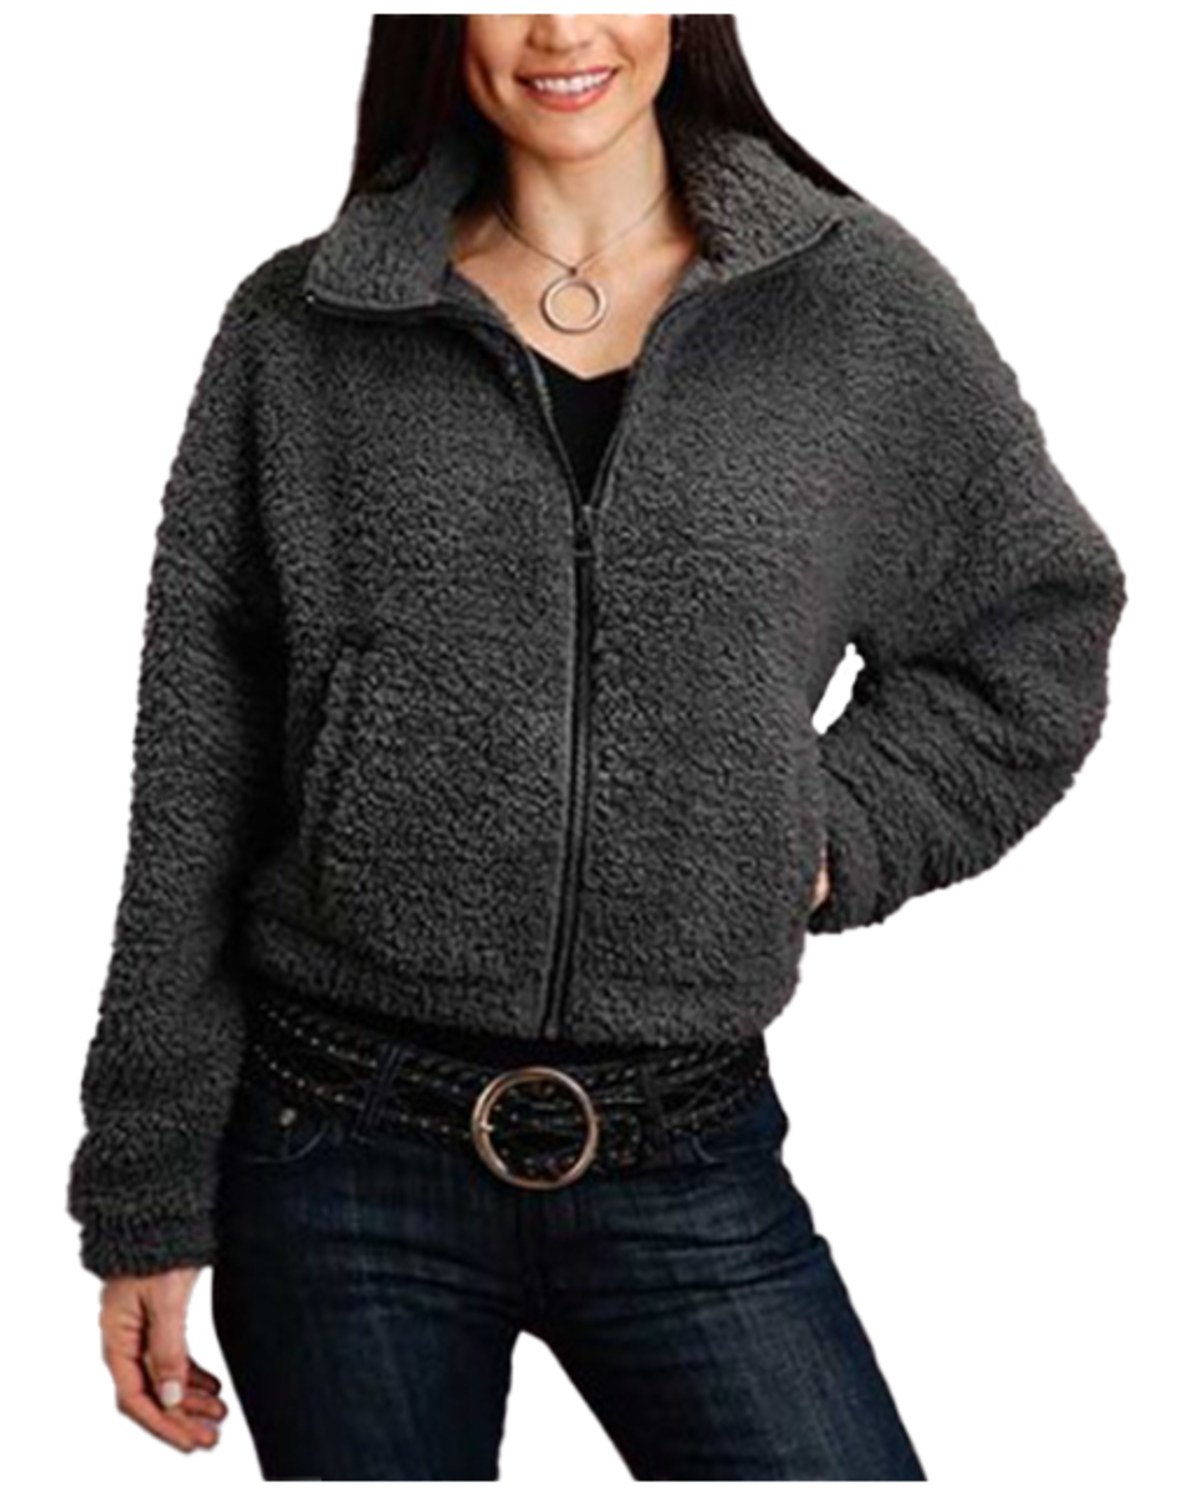 Stetson Women's Charcoal Fuzzy Fleece Jacket